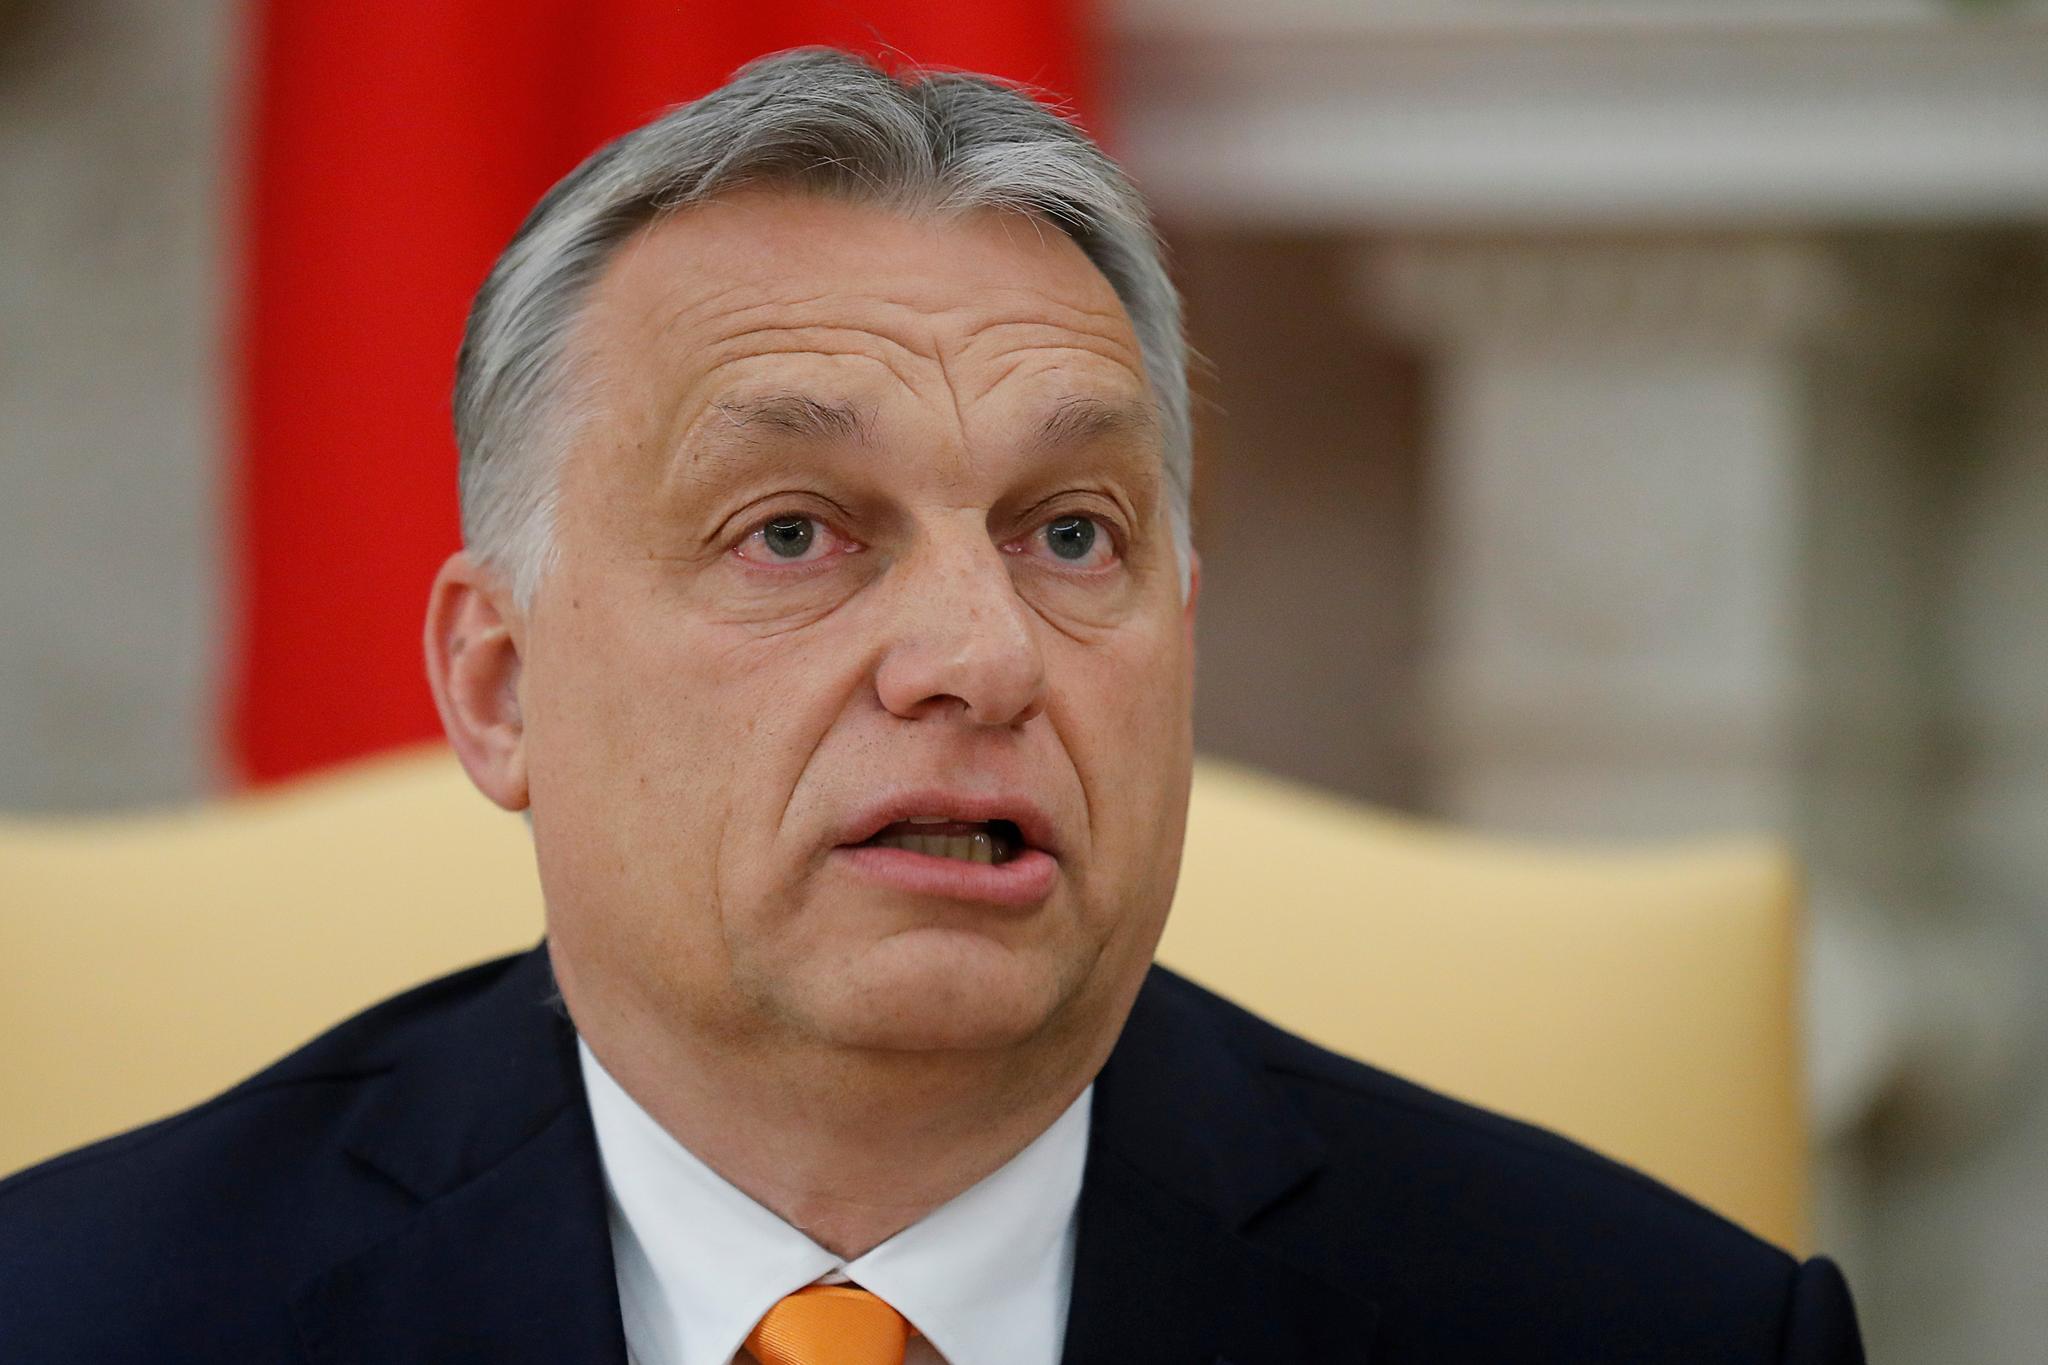 Er Matlary enig i at Orbán (bildet) gradvis og systematisk har svekket helt fundamentale deler av det ungarske demokratiet? spør Anders Ravik Jupskås.